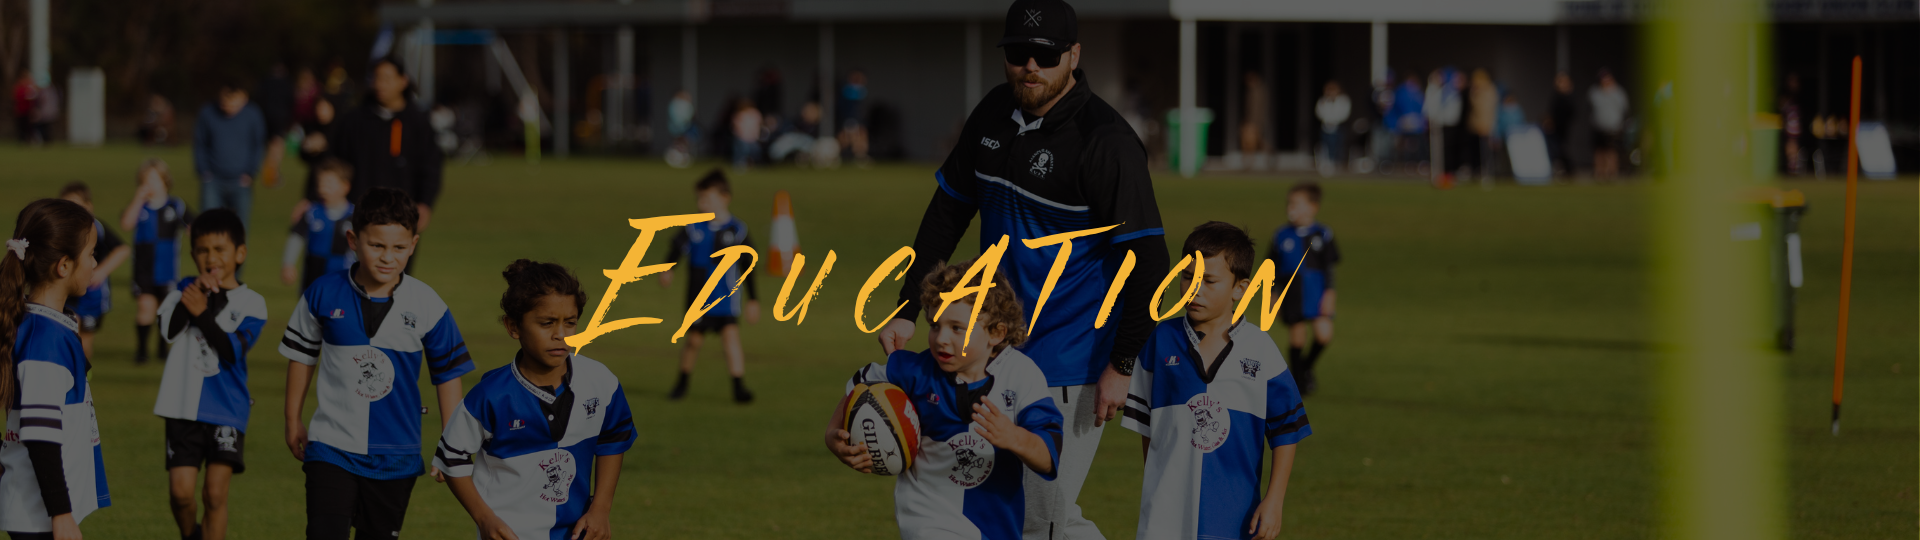 RugbyWA - education